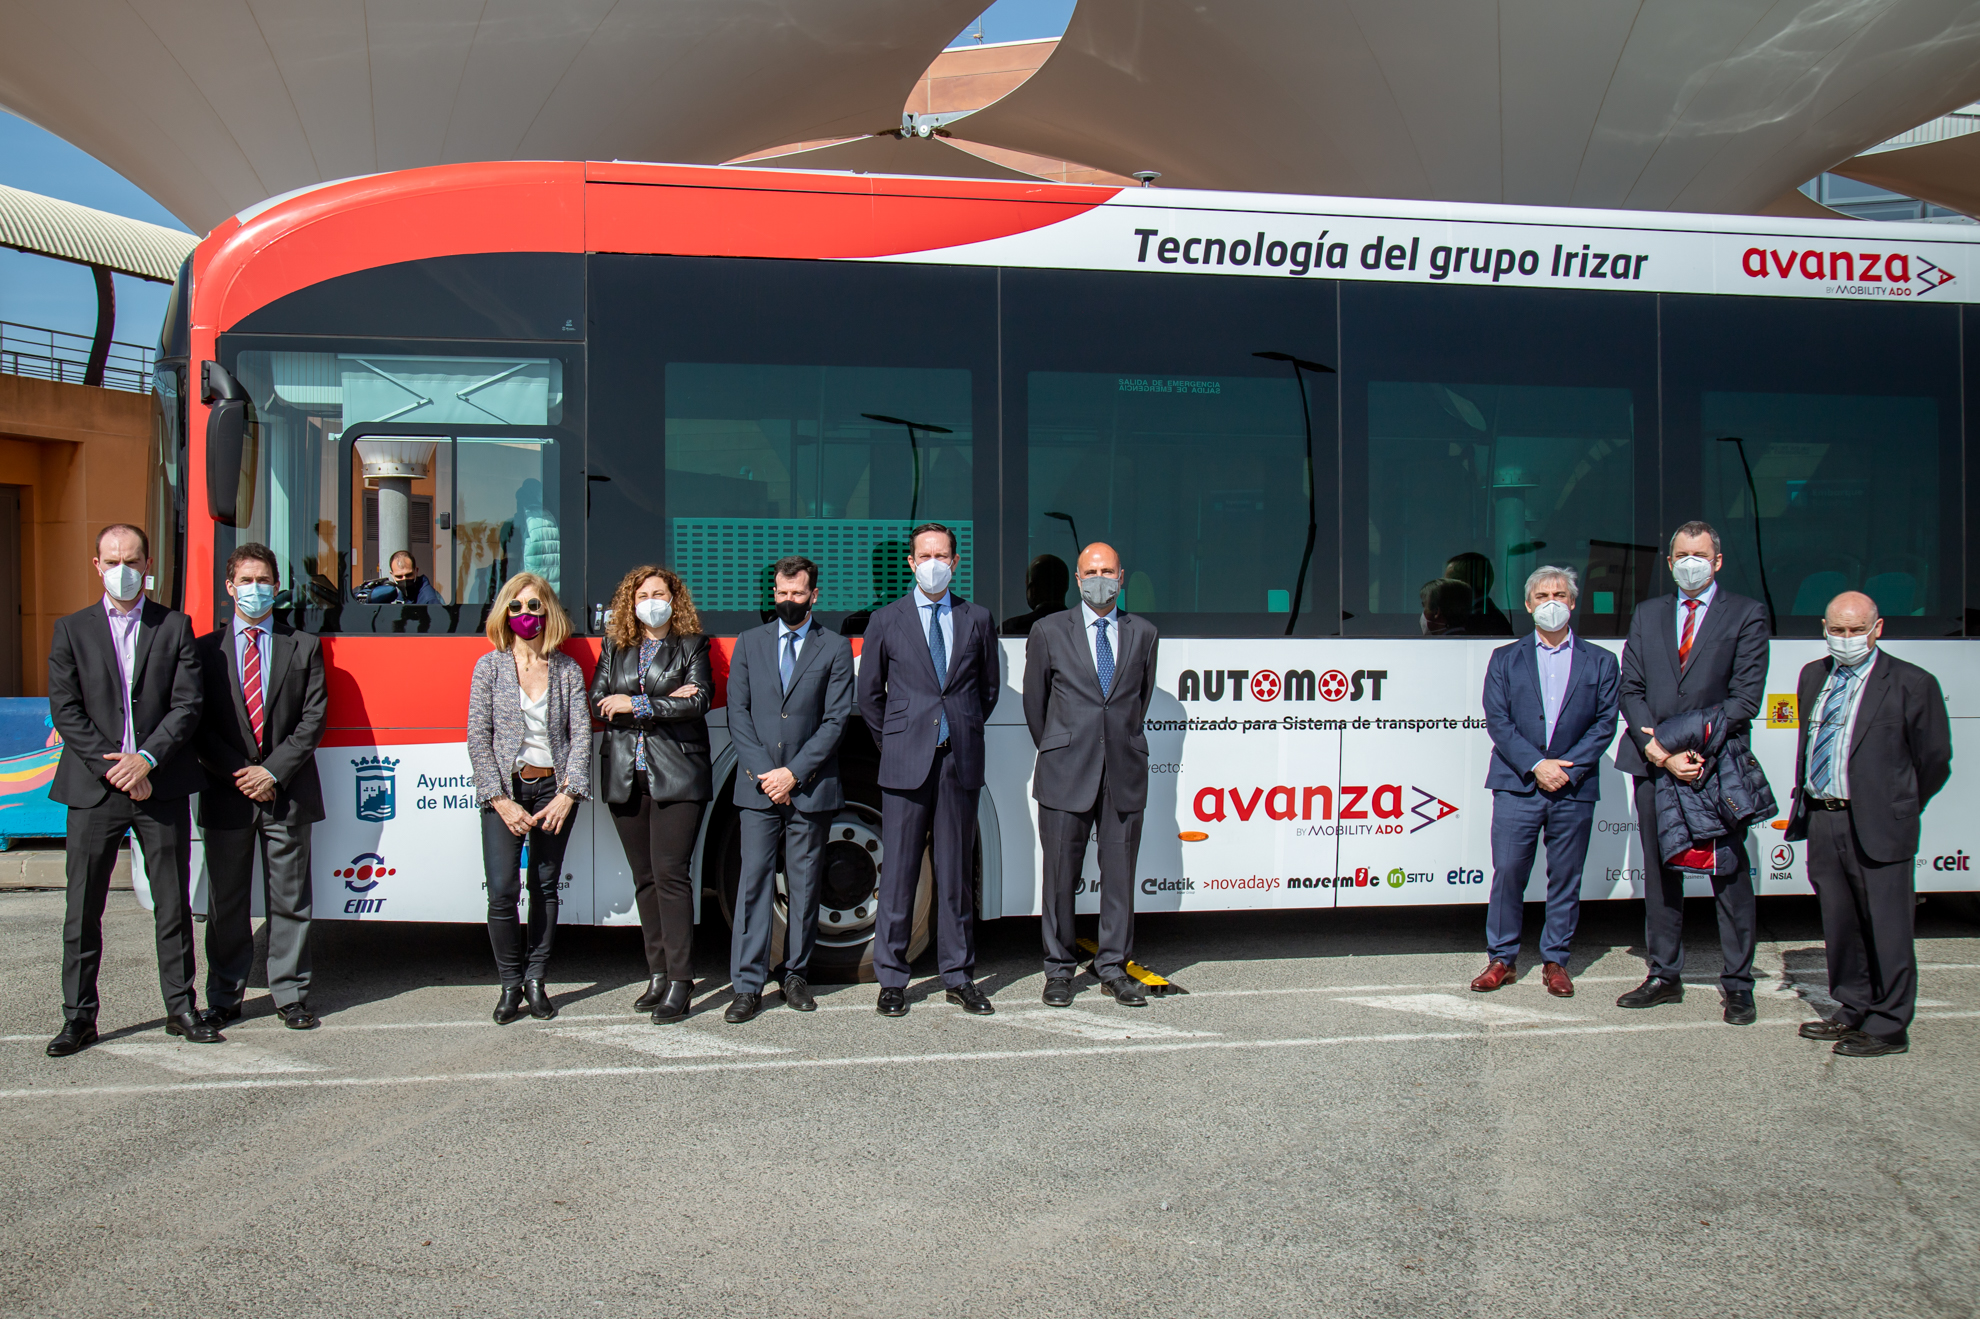 Le premier autobus autonome zéro émission Irizar fait ses débuts à Malaga